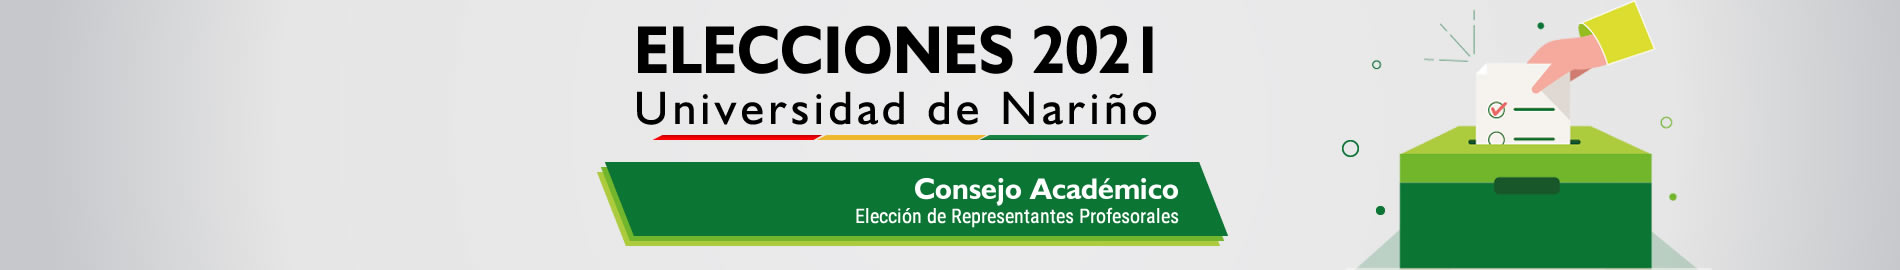 banner_Elecciones_Academico_Docentes